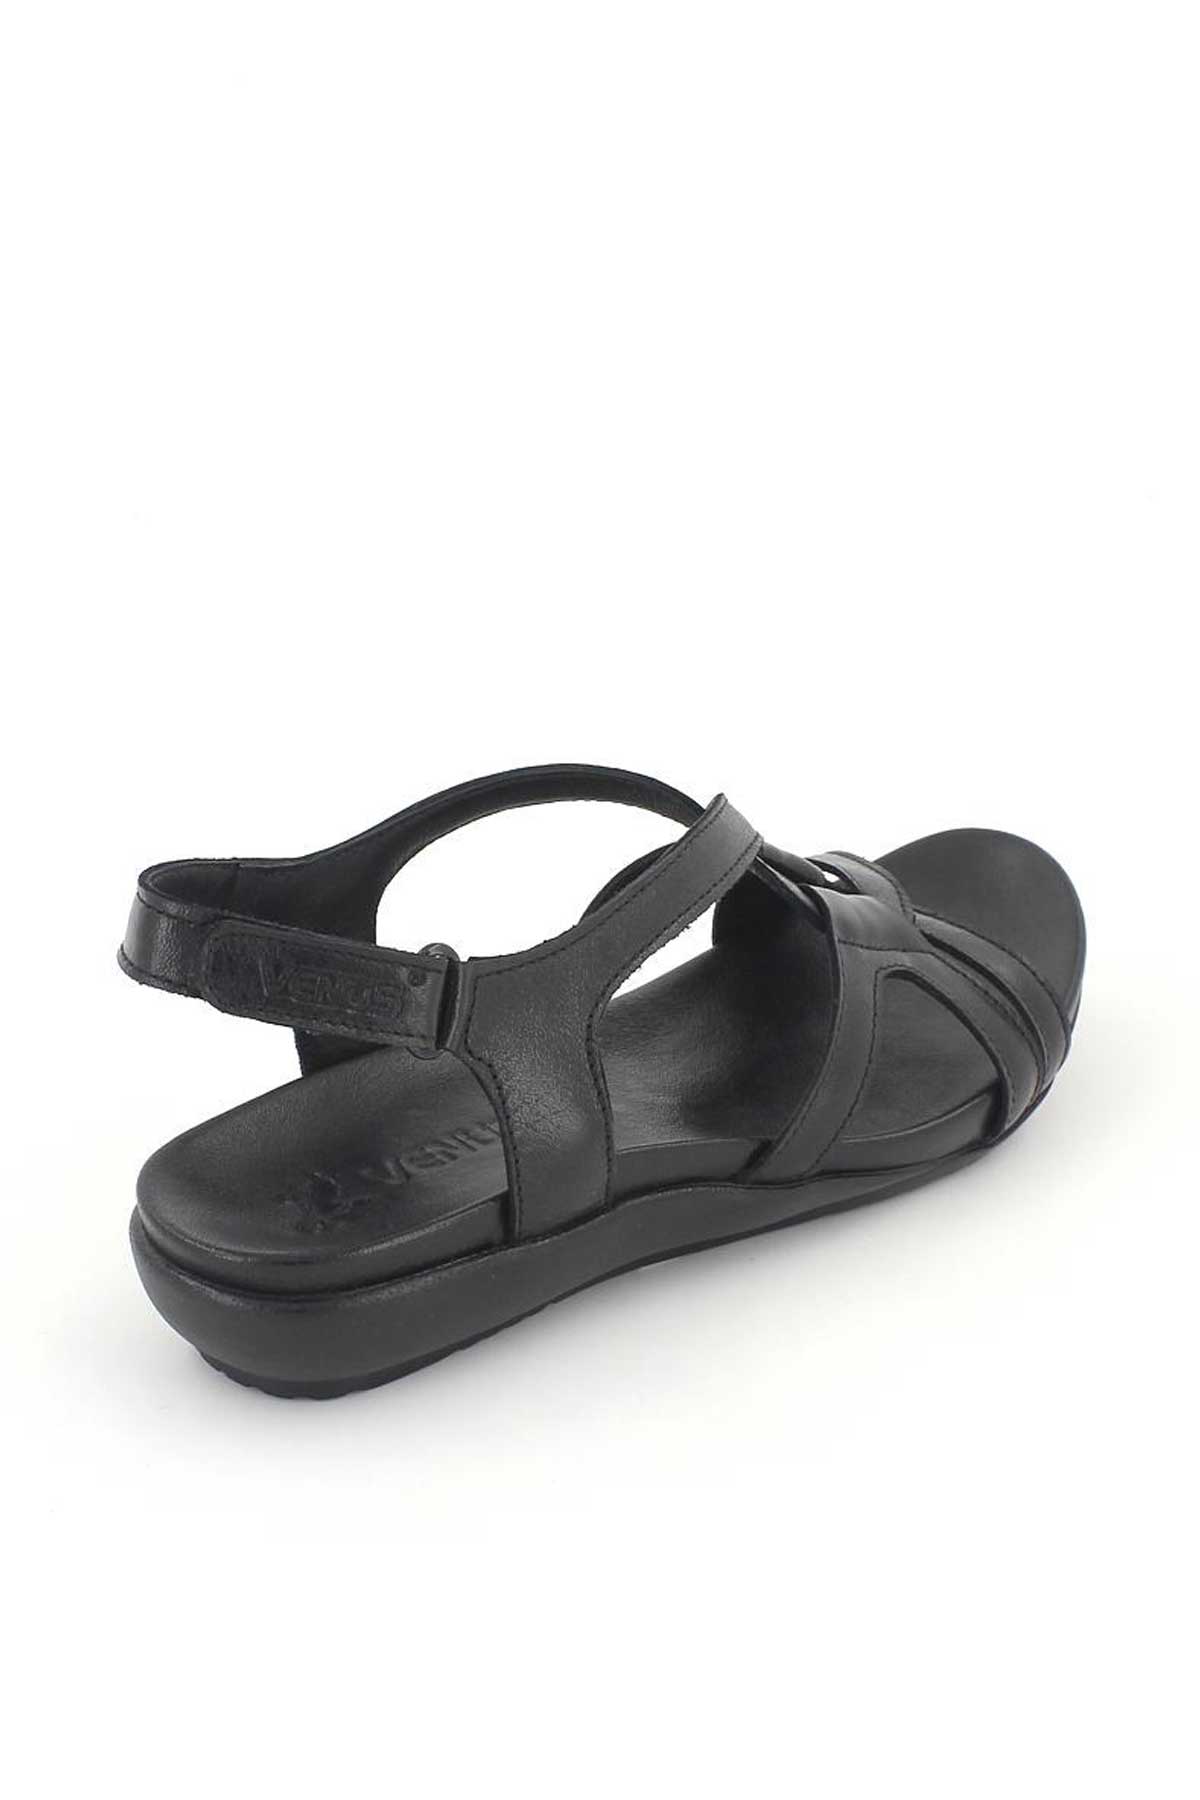 Kadın Comfort Sandalet Siyah 206Y